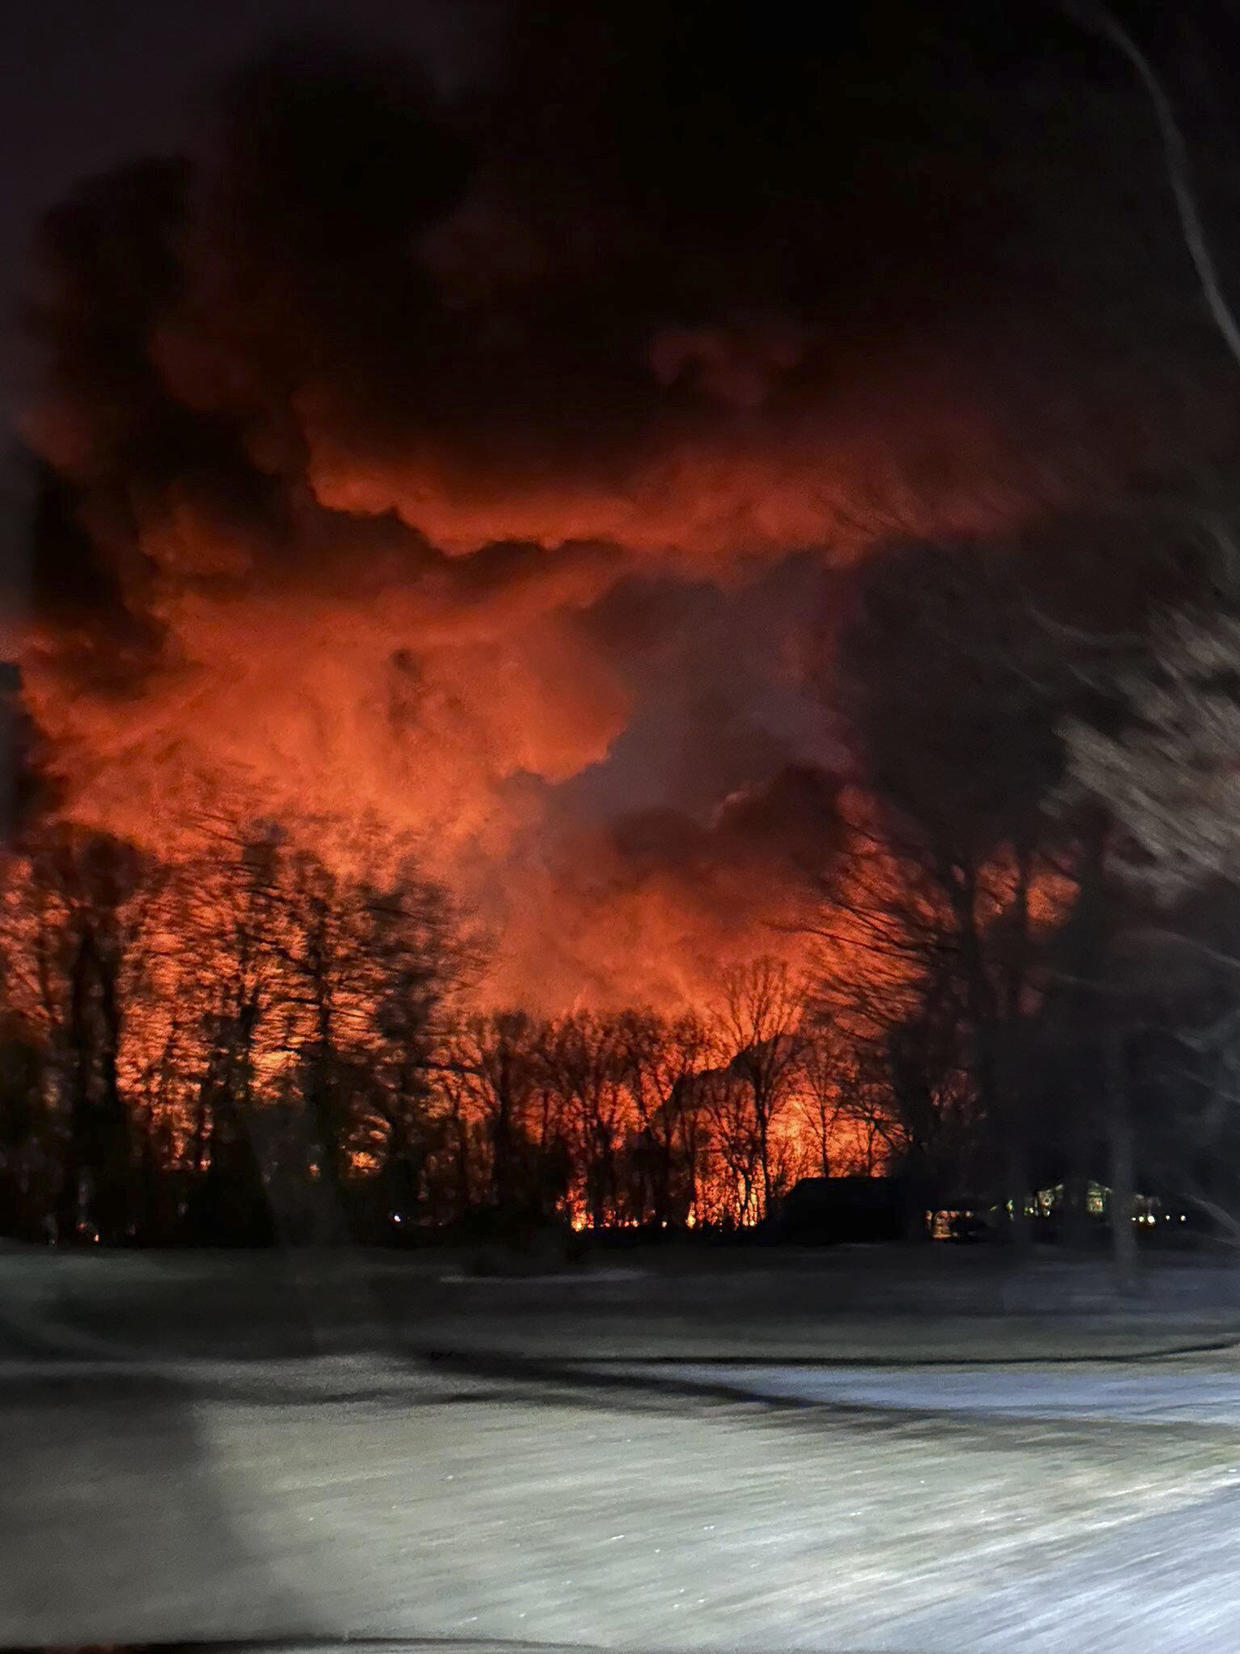 Train Derailment Causes Massive Fire in Ohio